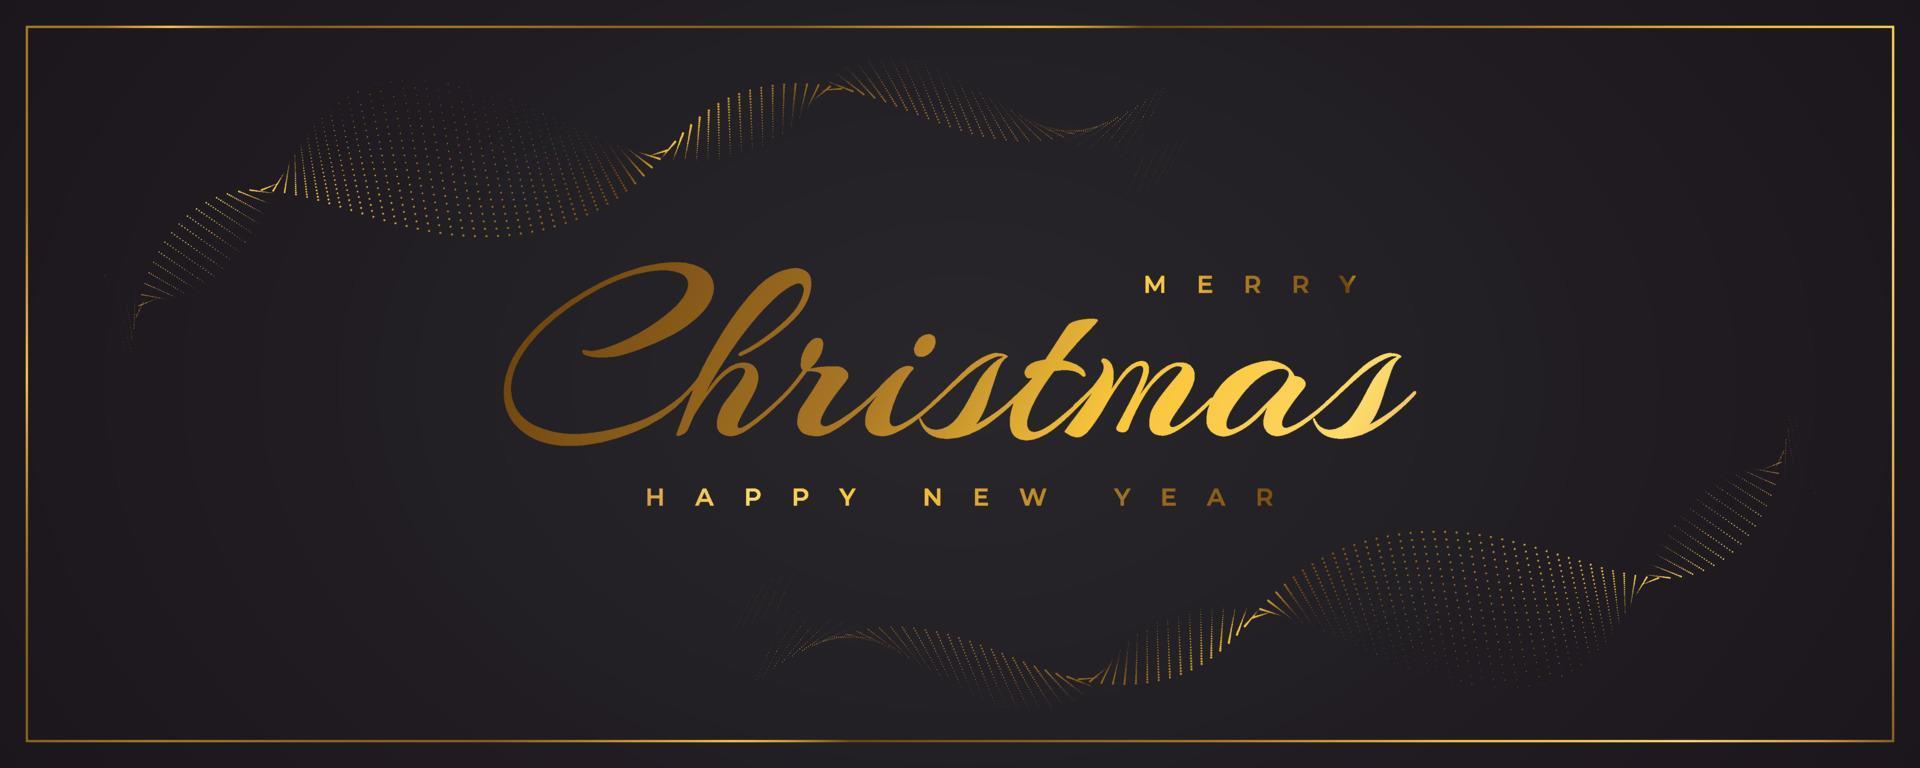 god jul och gott nytt år banner eller affisch. elegant julhälsningskort i svart och guld vektor